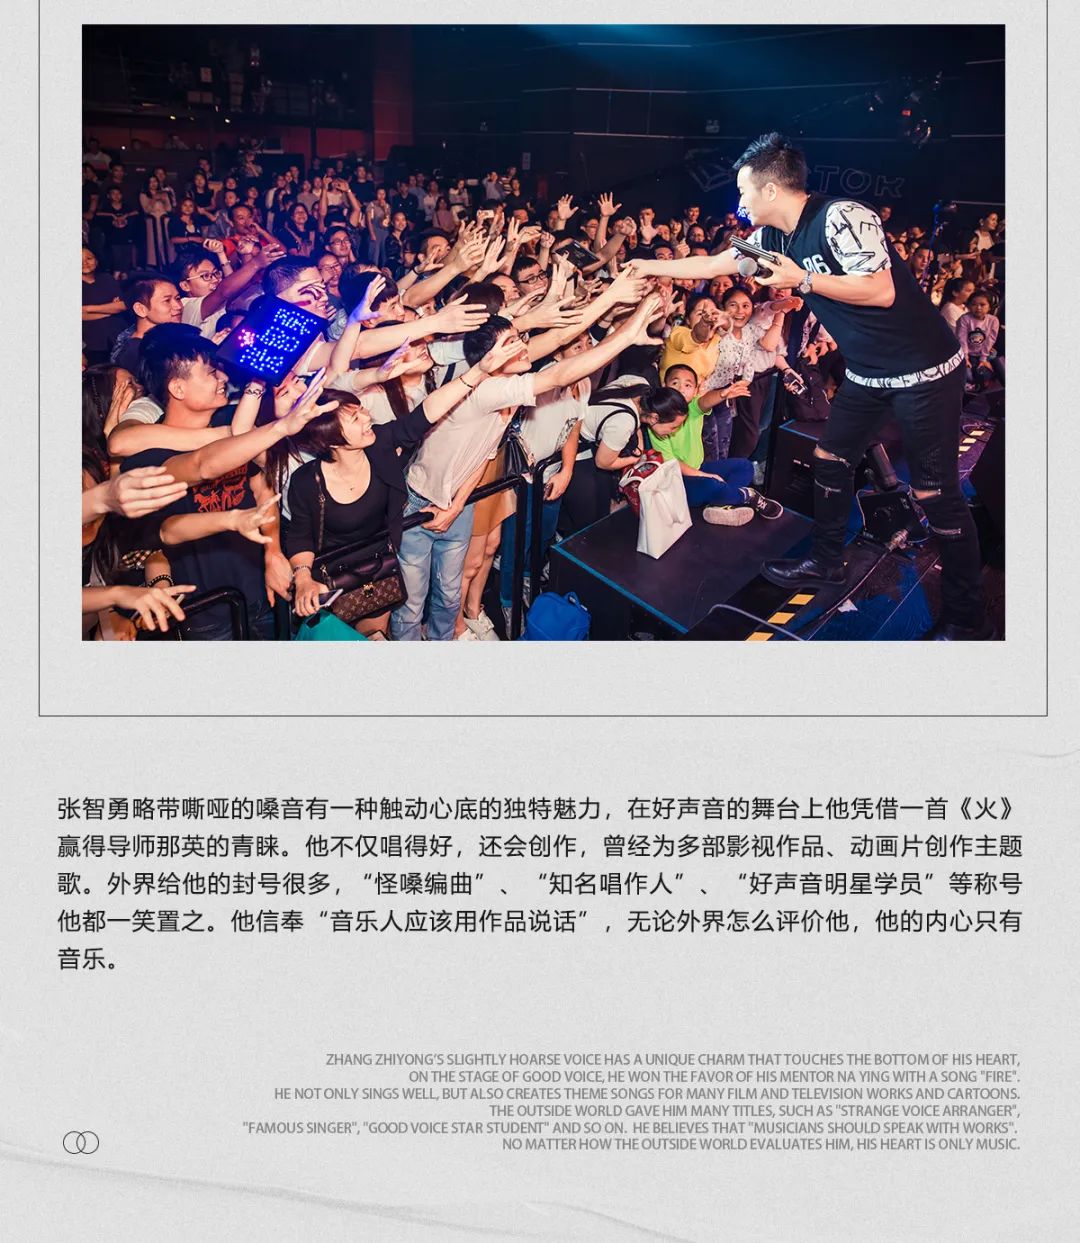 CLUB MIAMI | 11.26 中国好声音-张智勇 灵魂歌者 为音乐而生 ！-青州迈阿密酒吧/MIAMI CLUB